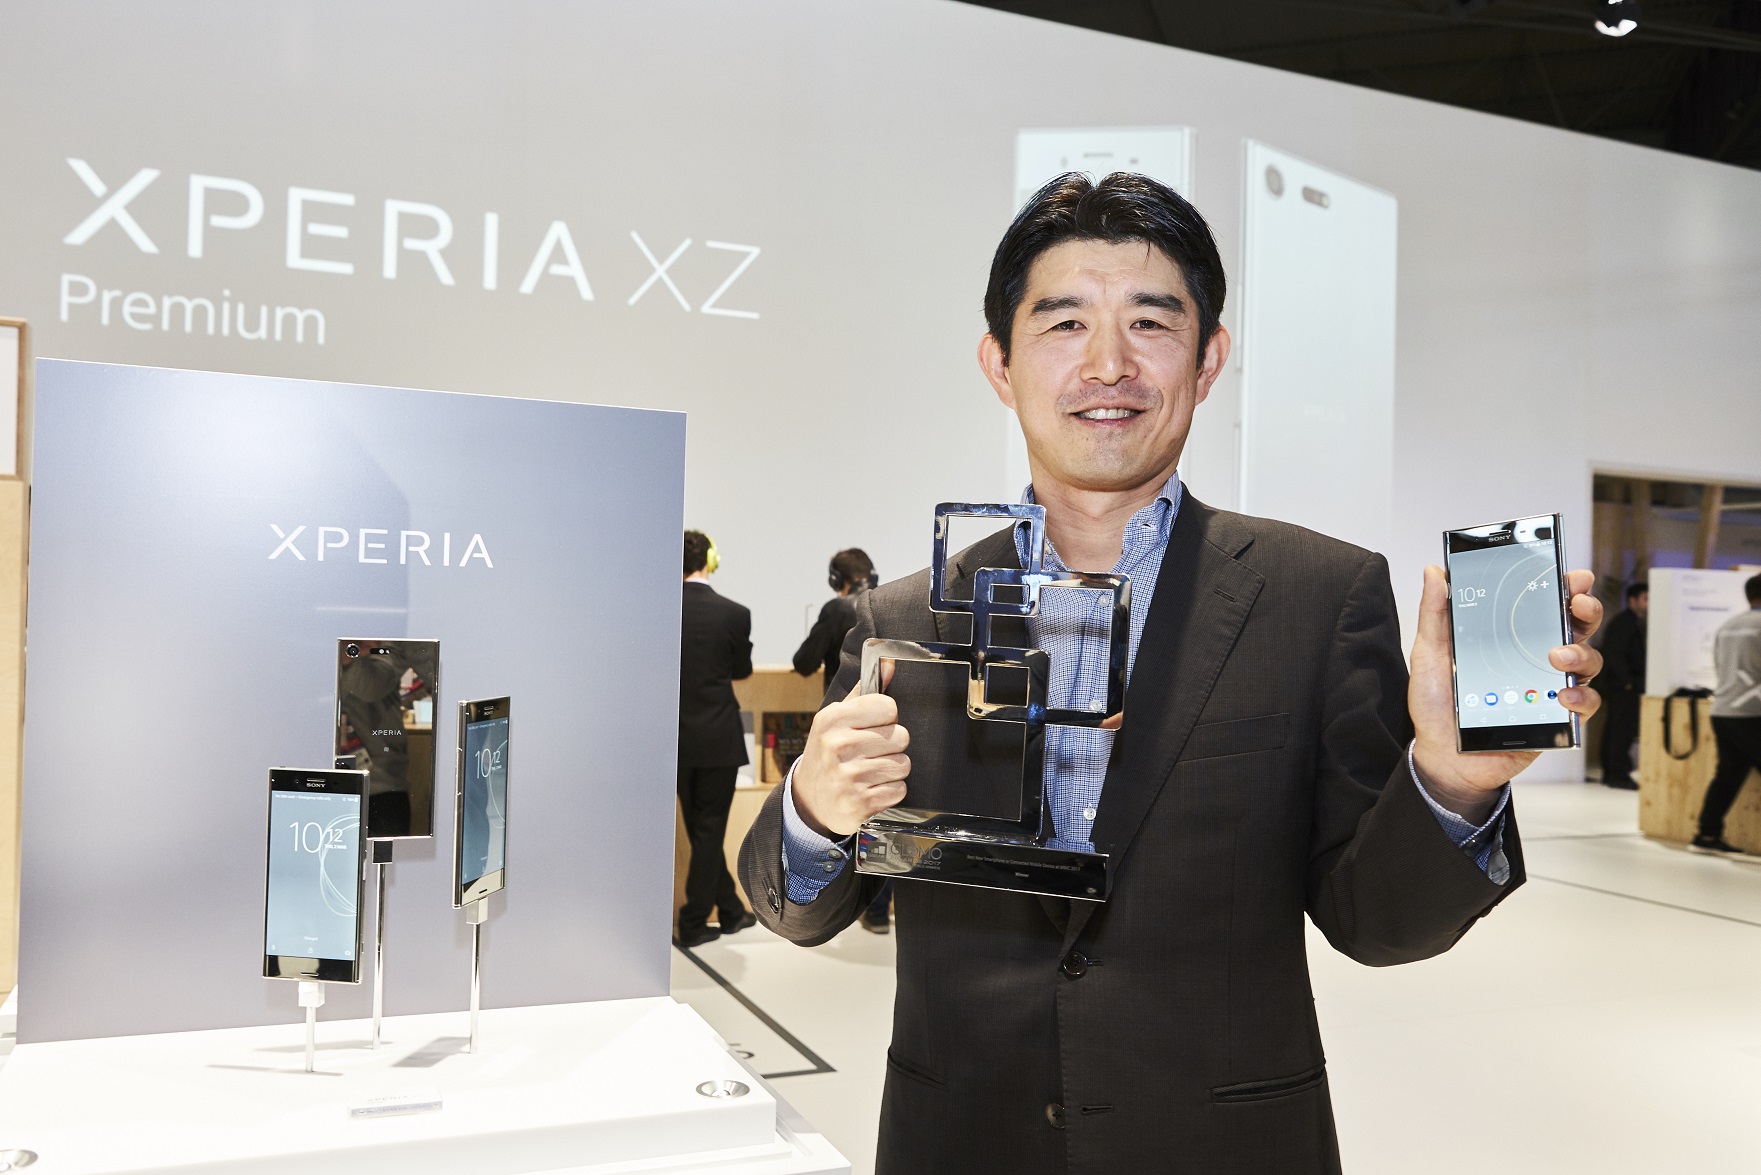 Xperia XZ Premium ได้รับการยกย่องให้เป็น “สมาร์ทโฟนรุ่นใหม่ที่ดีที่สุดในงาน MWC 2017″